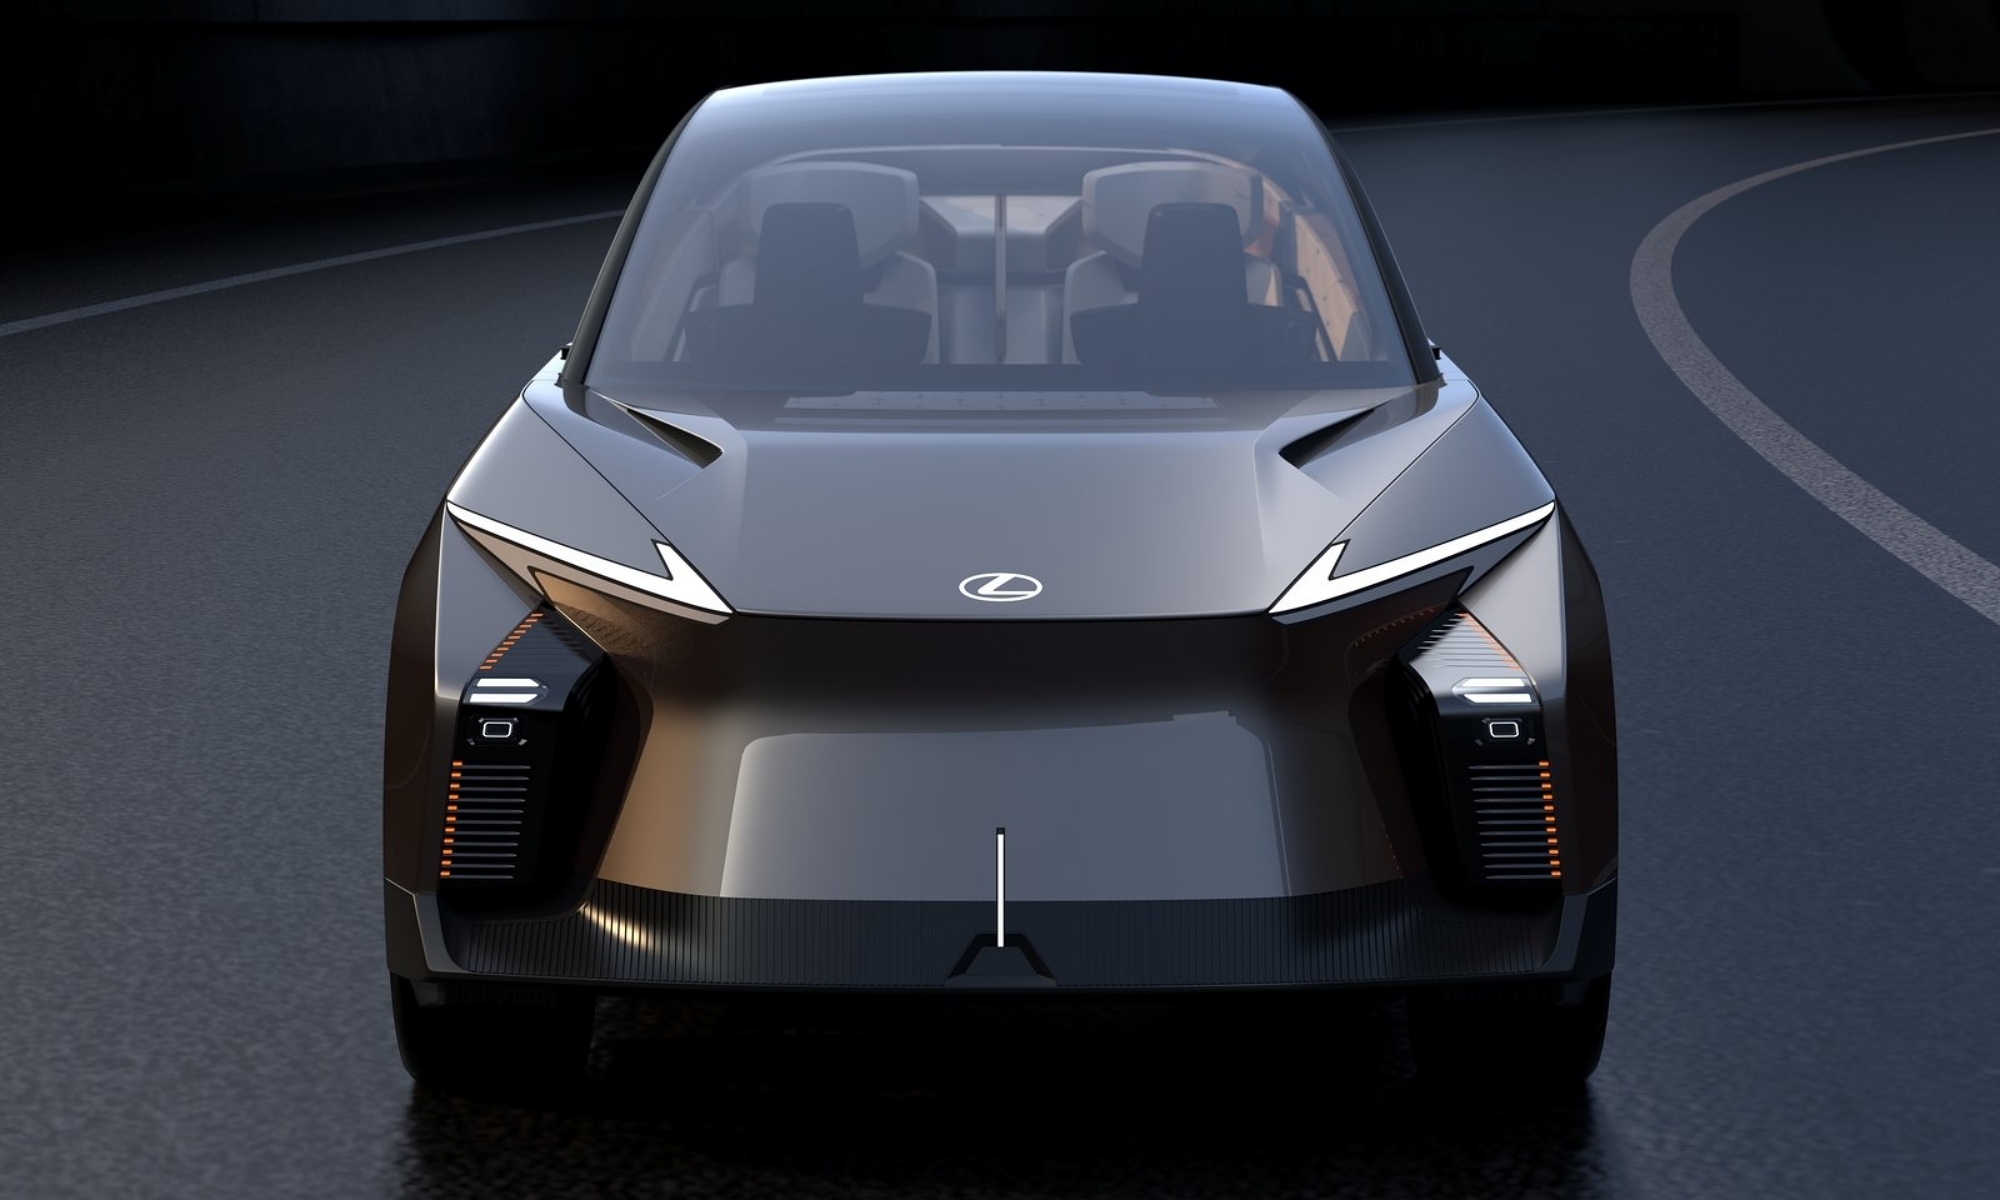 Aunque sea un prototipo futurista, el estilo tradicional de Lexus se reconoce fácilmente.